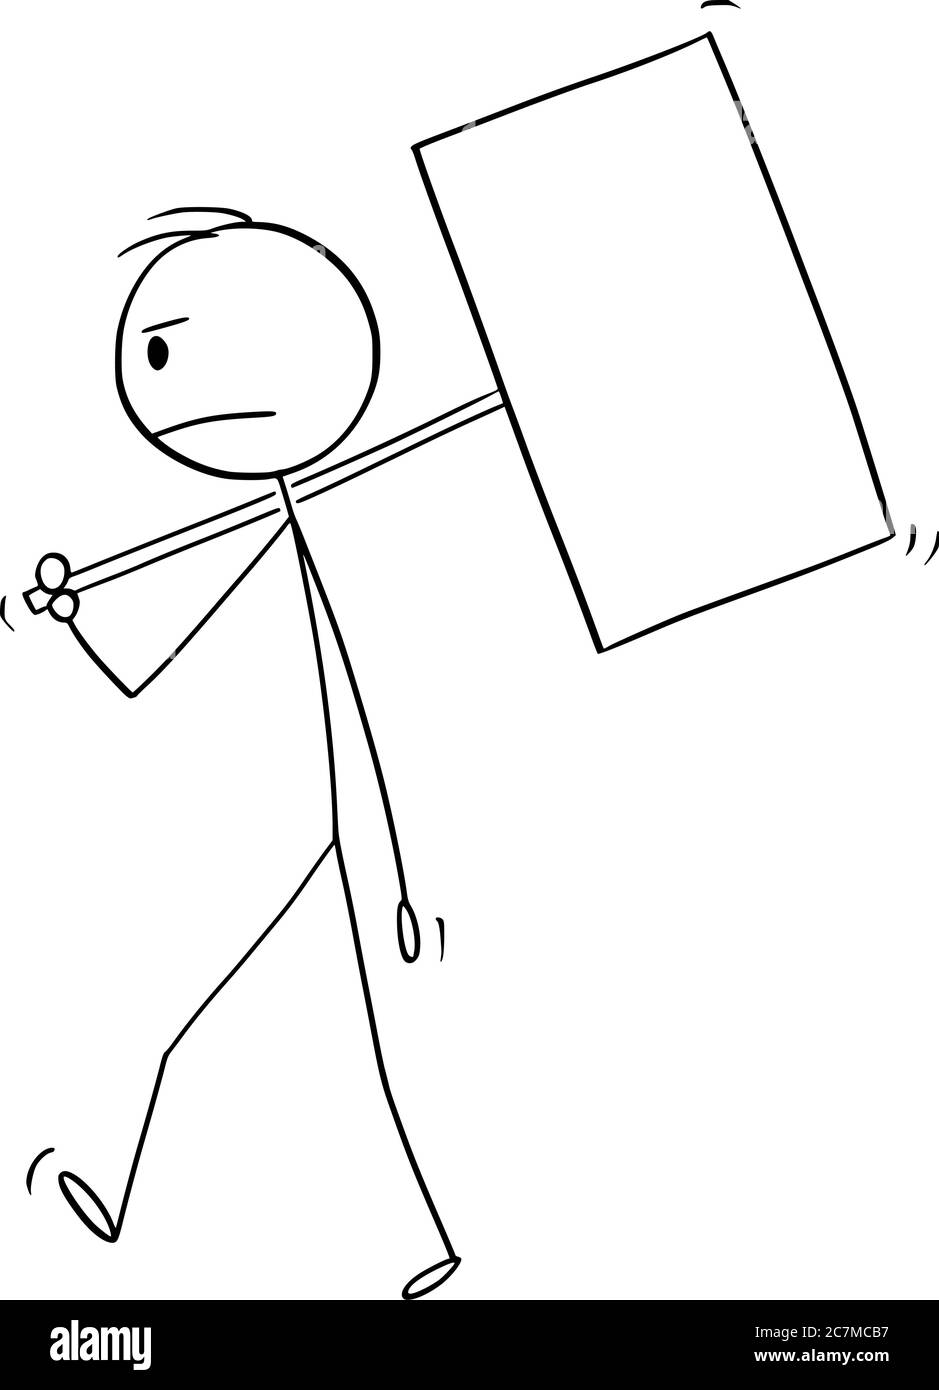 Vektor Cartoon Stick Figur Zeichnung konzeptionelle Illustration frustriert Mann oder Geschäftsmann zu Fuß mit leeren oder leeren Zeichen auf Stange. Stock Vektor